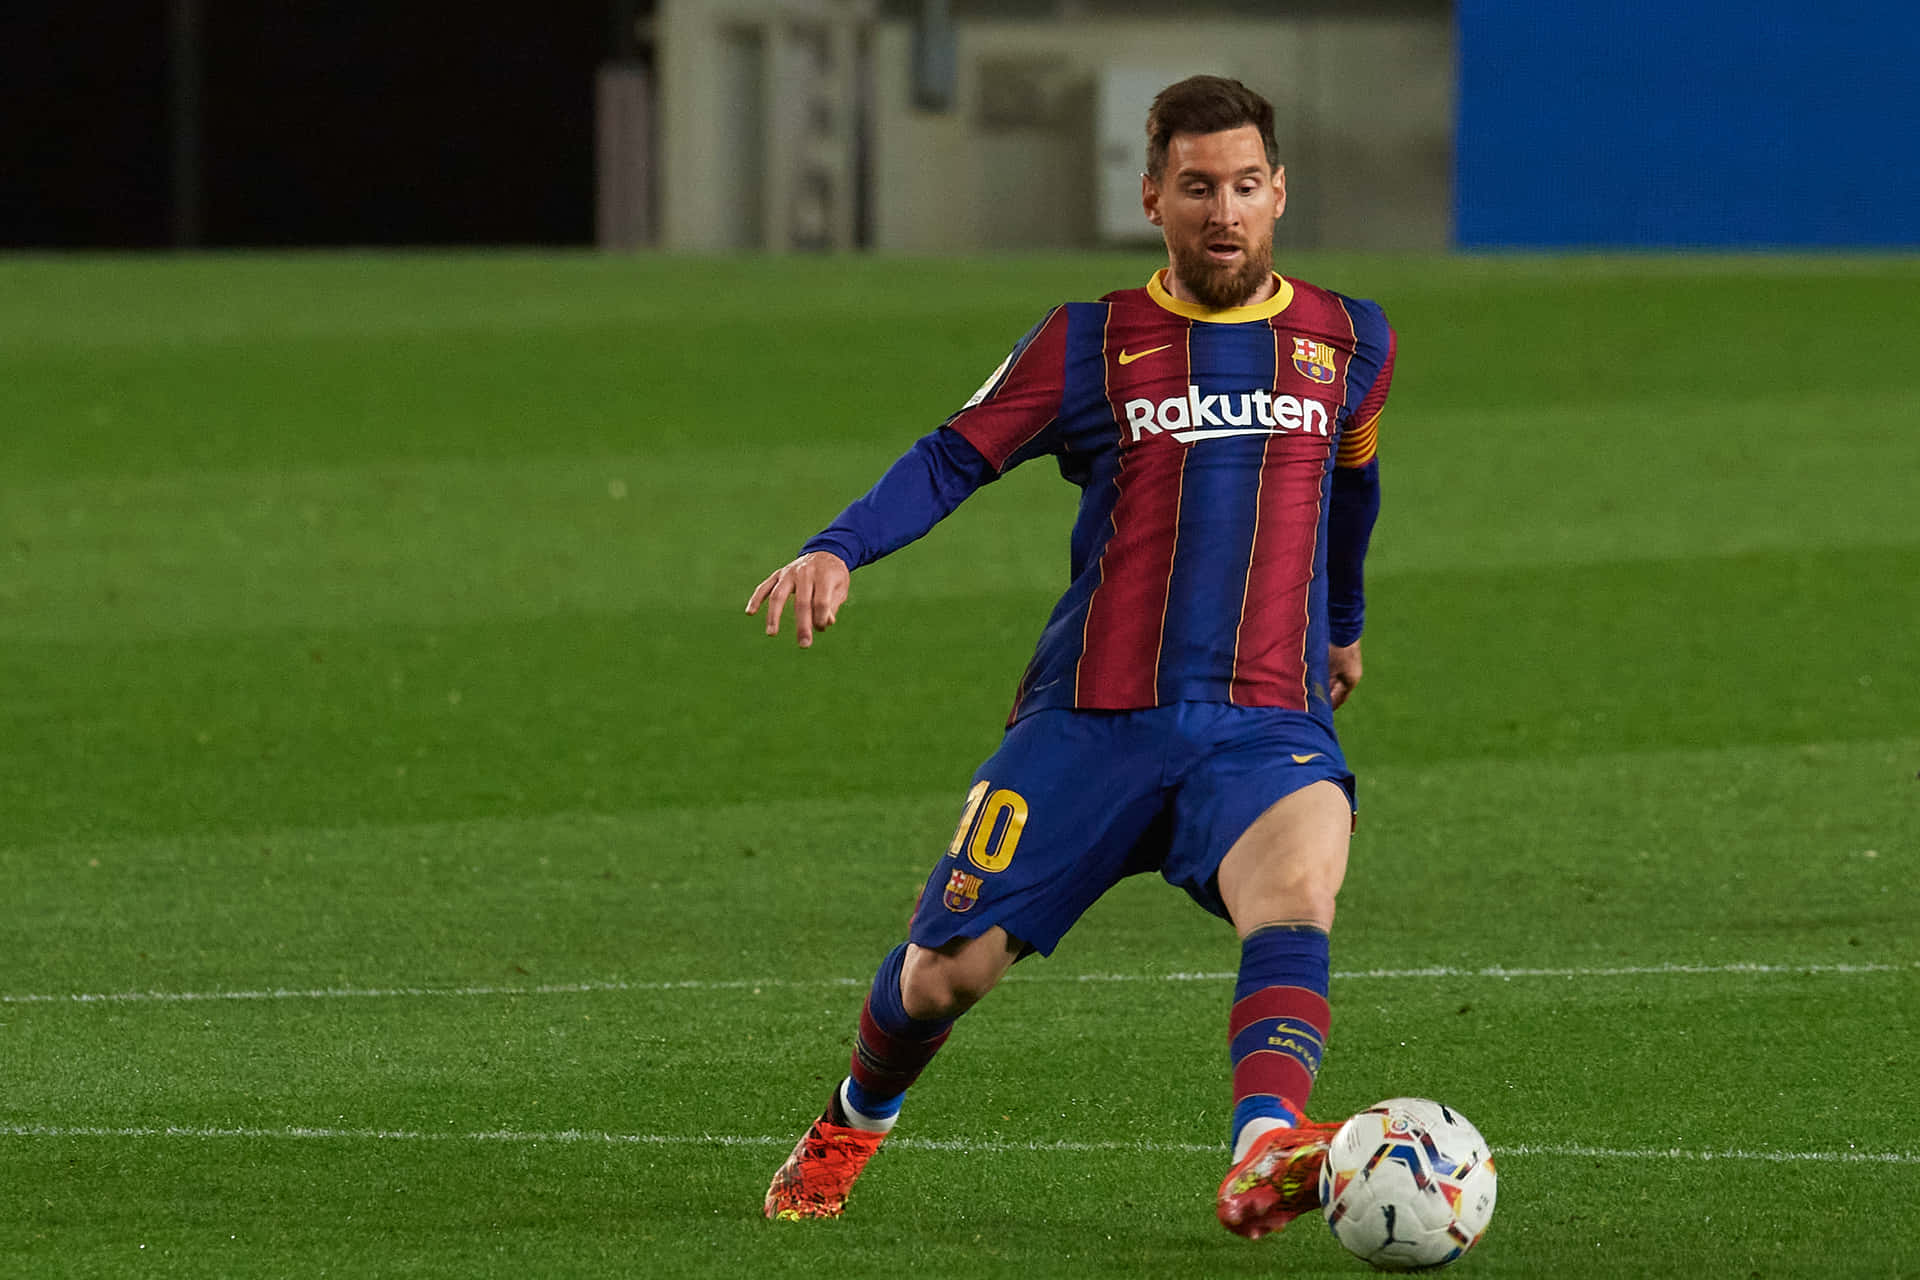 Fotbollsspelarelionel Messi Bild.